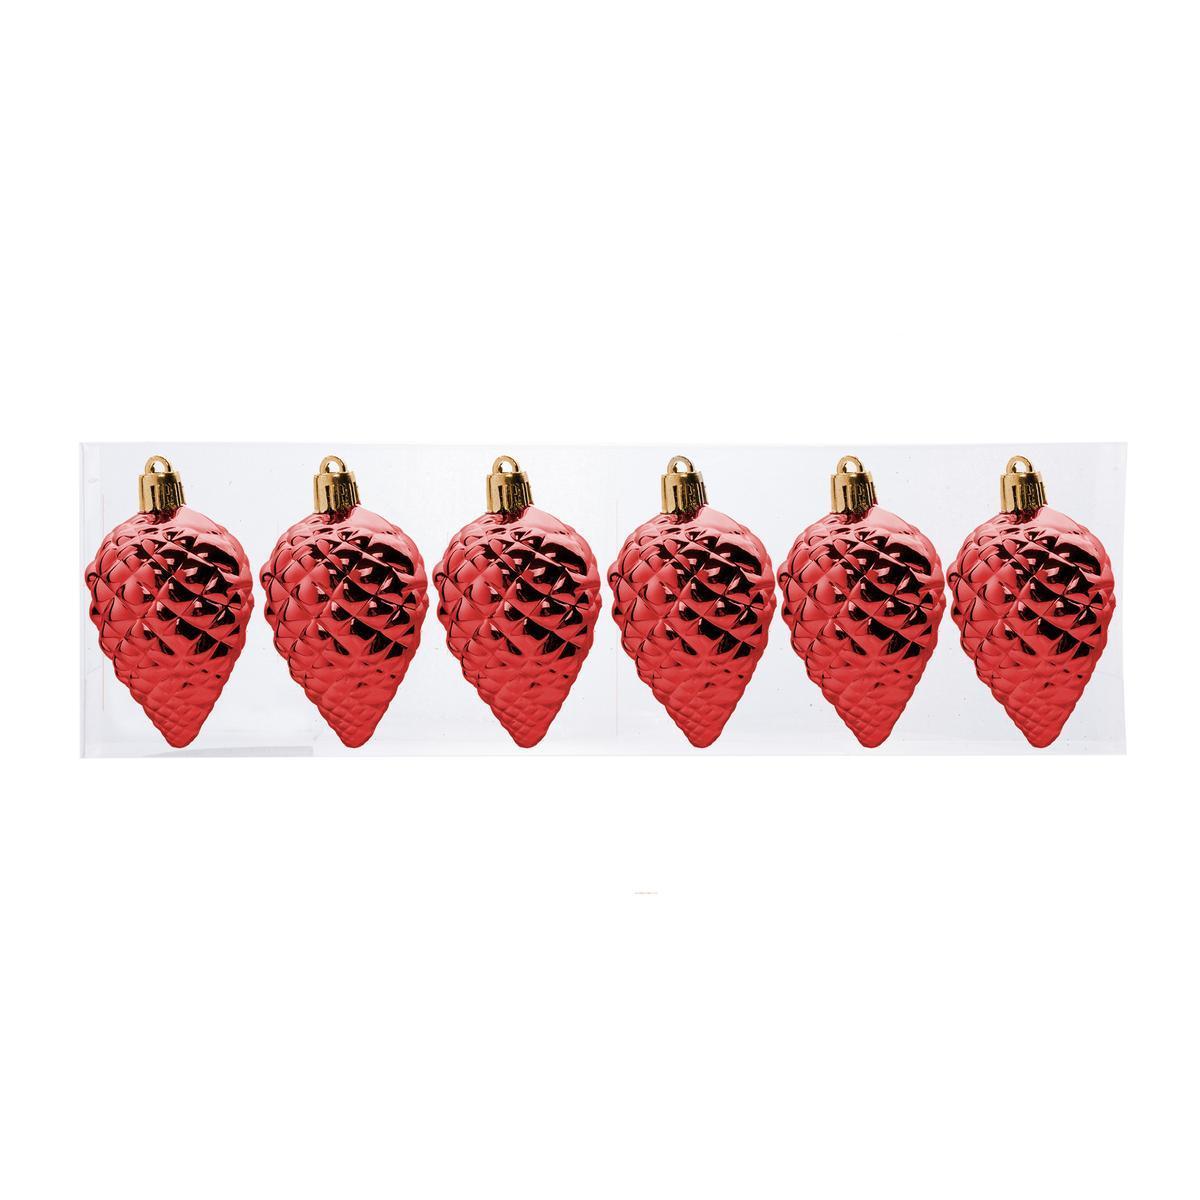 6 suspensions pomme de pin - H 6.5 cm - Rouge